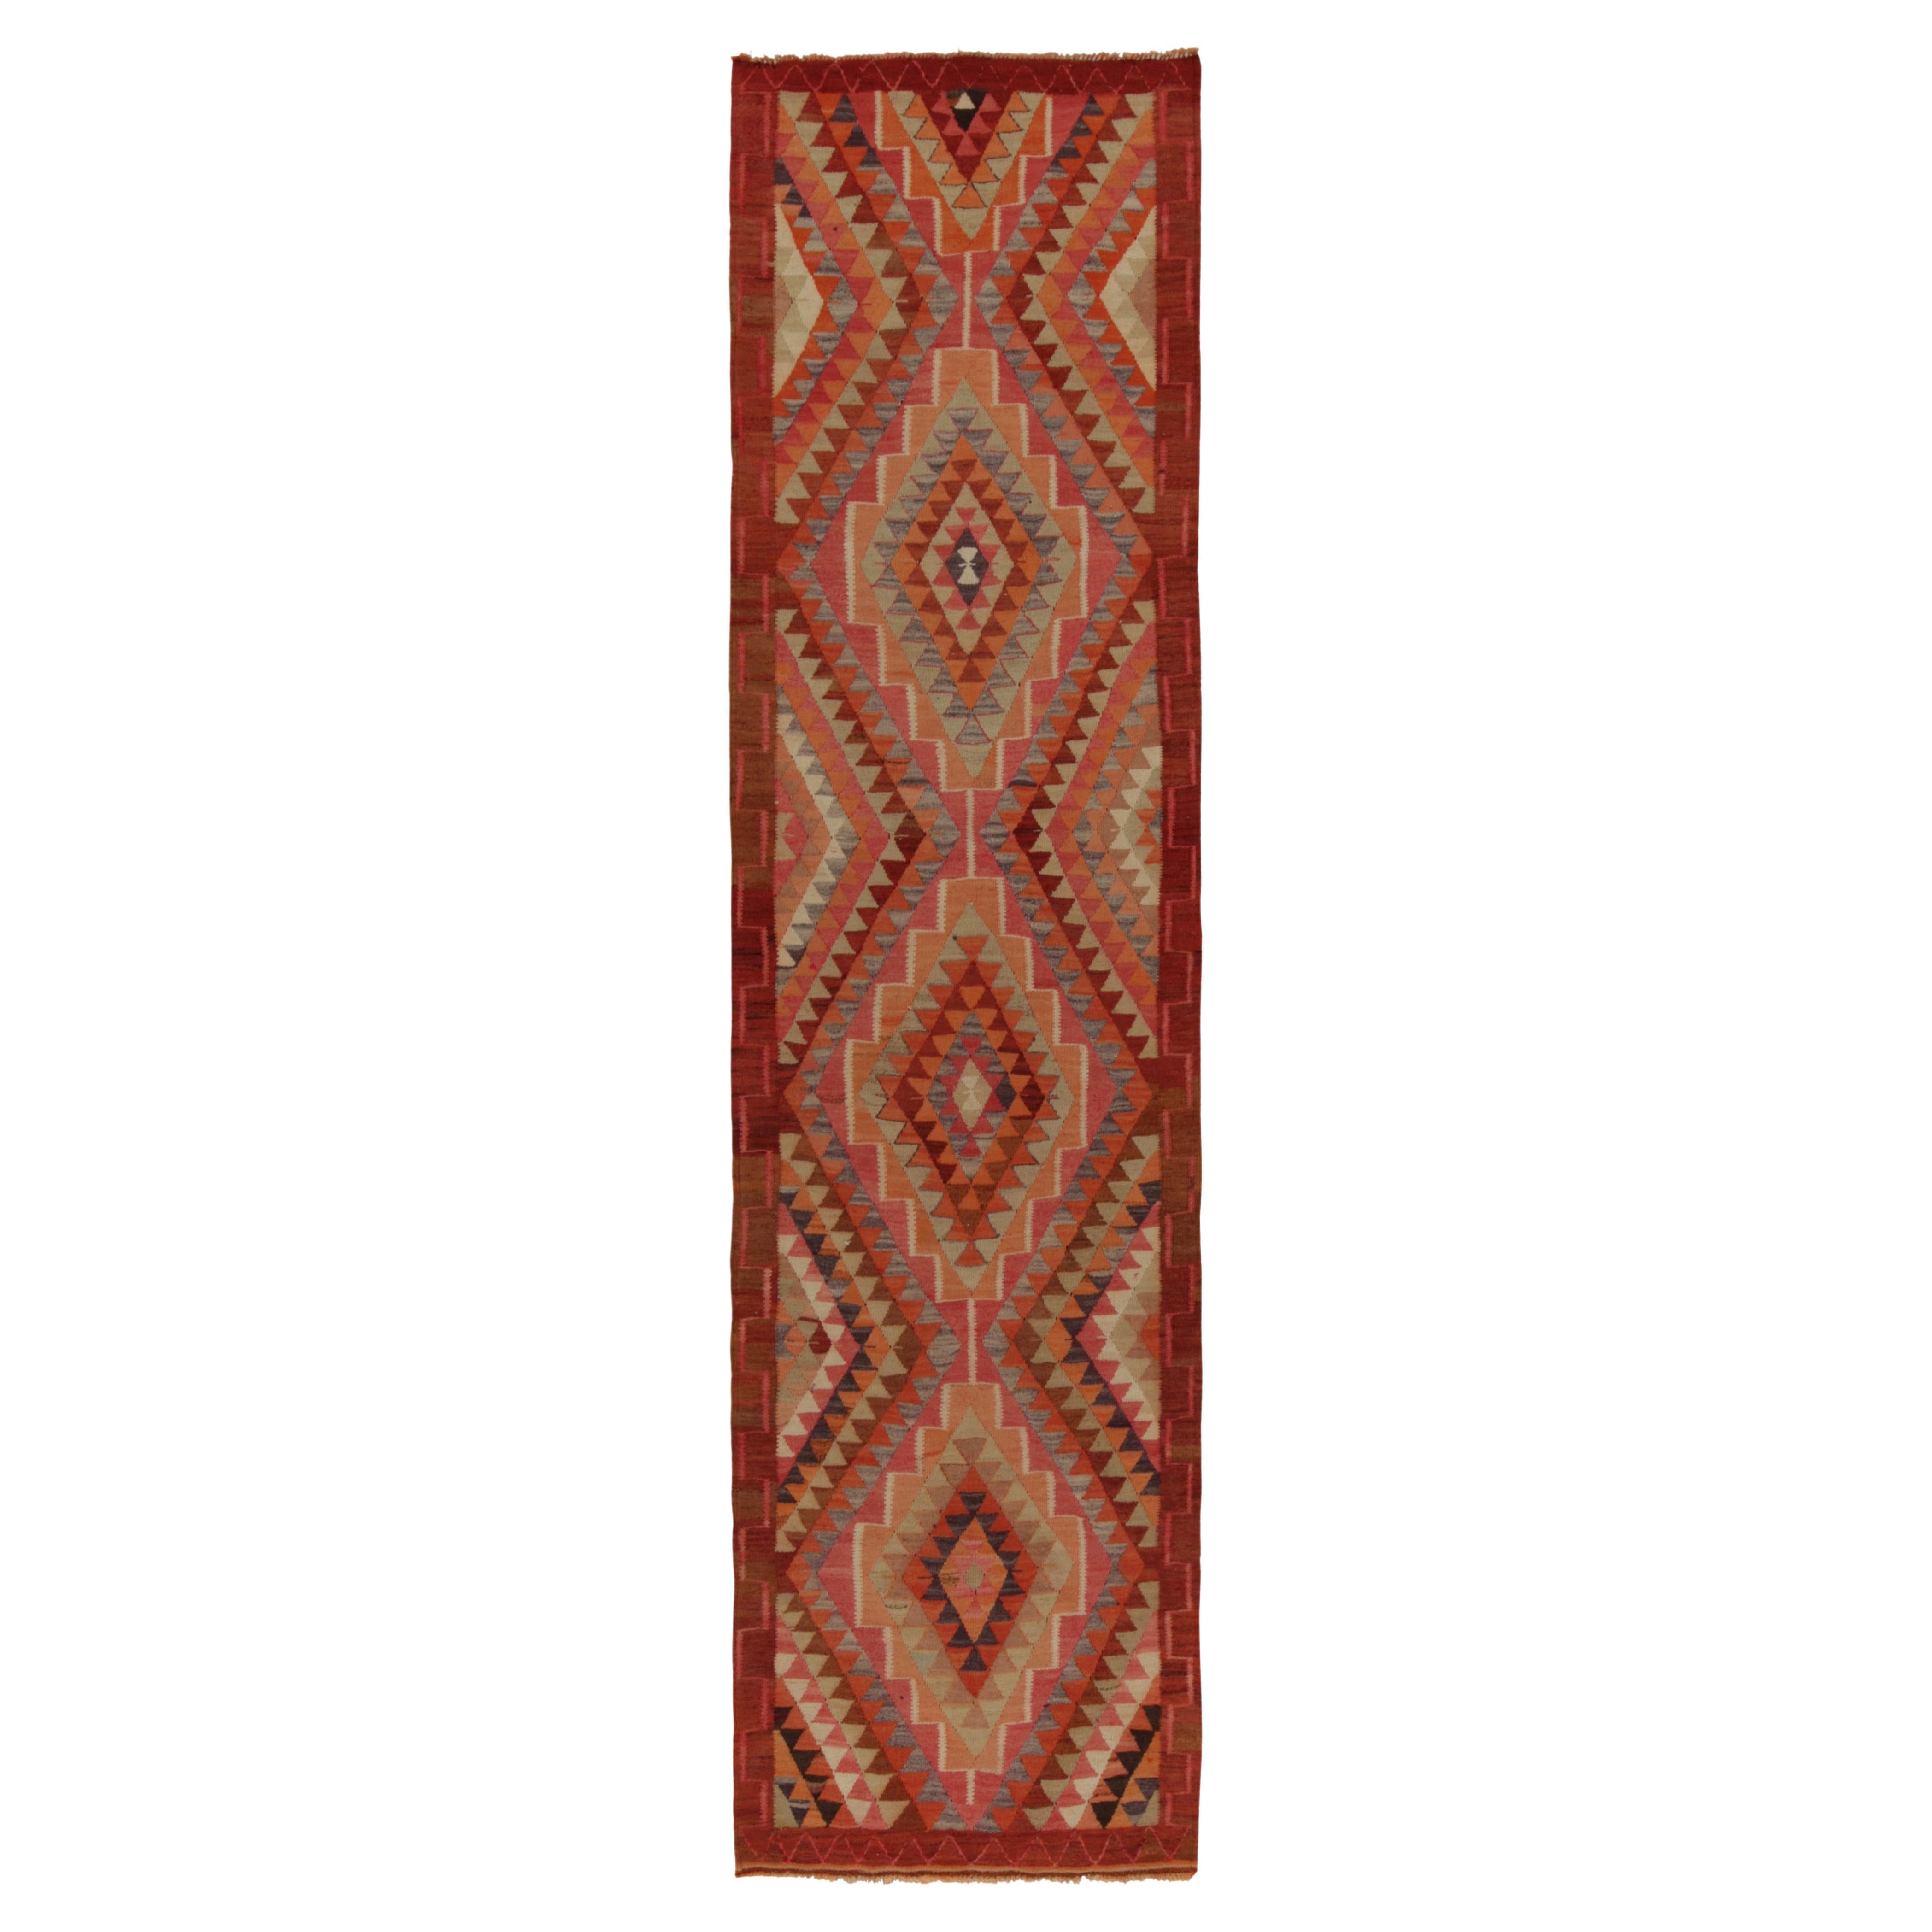 Vintage Tribal Kilim Runner in Red Brown Orange Geometric Pattern by Rug & Kilim